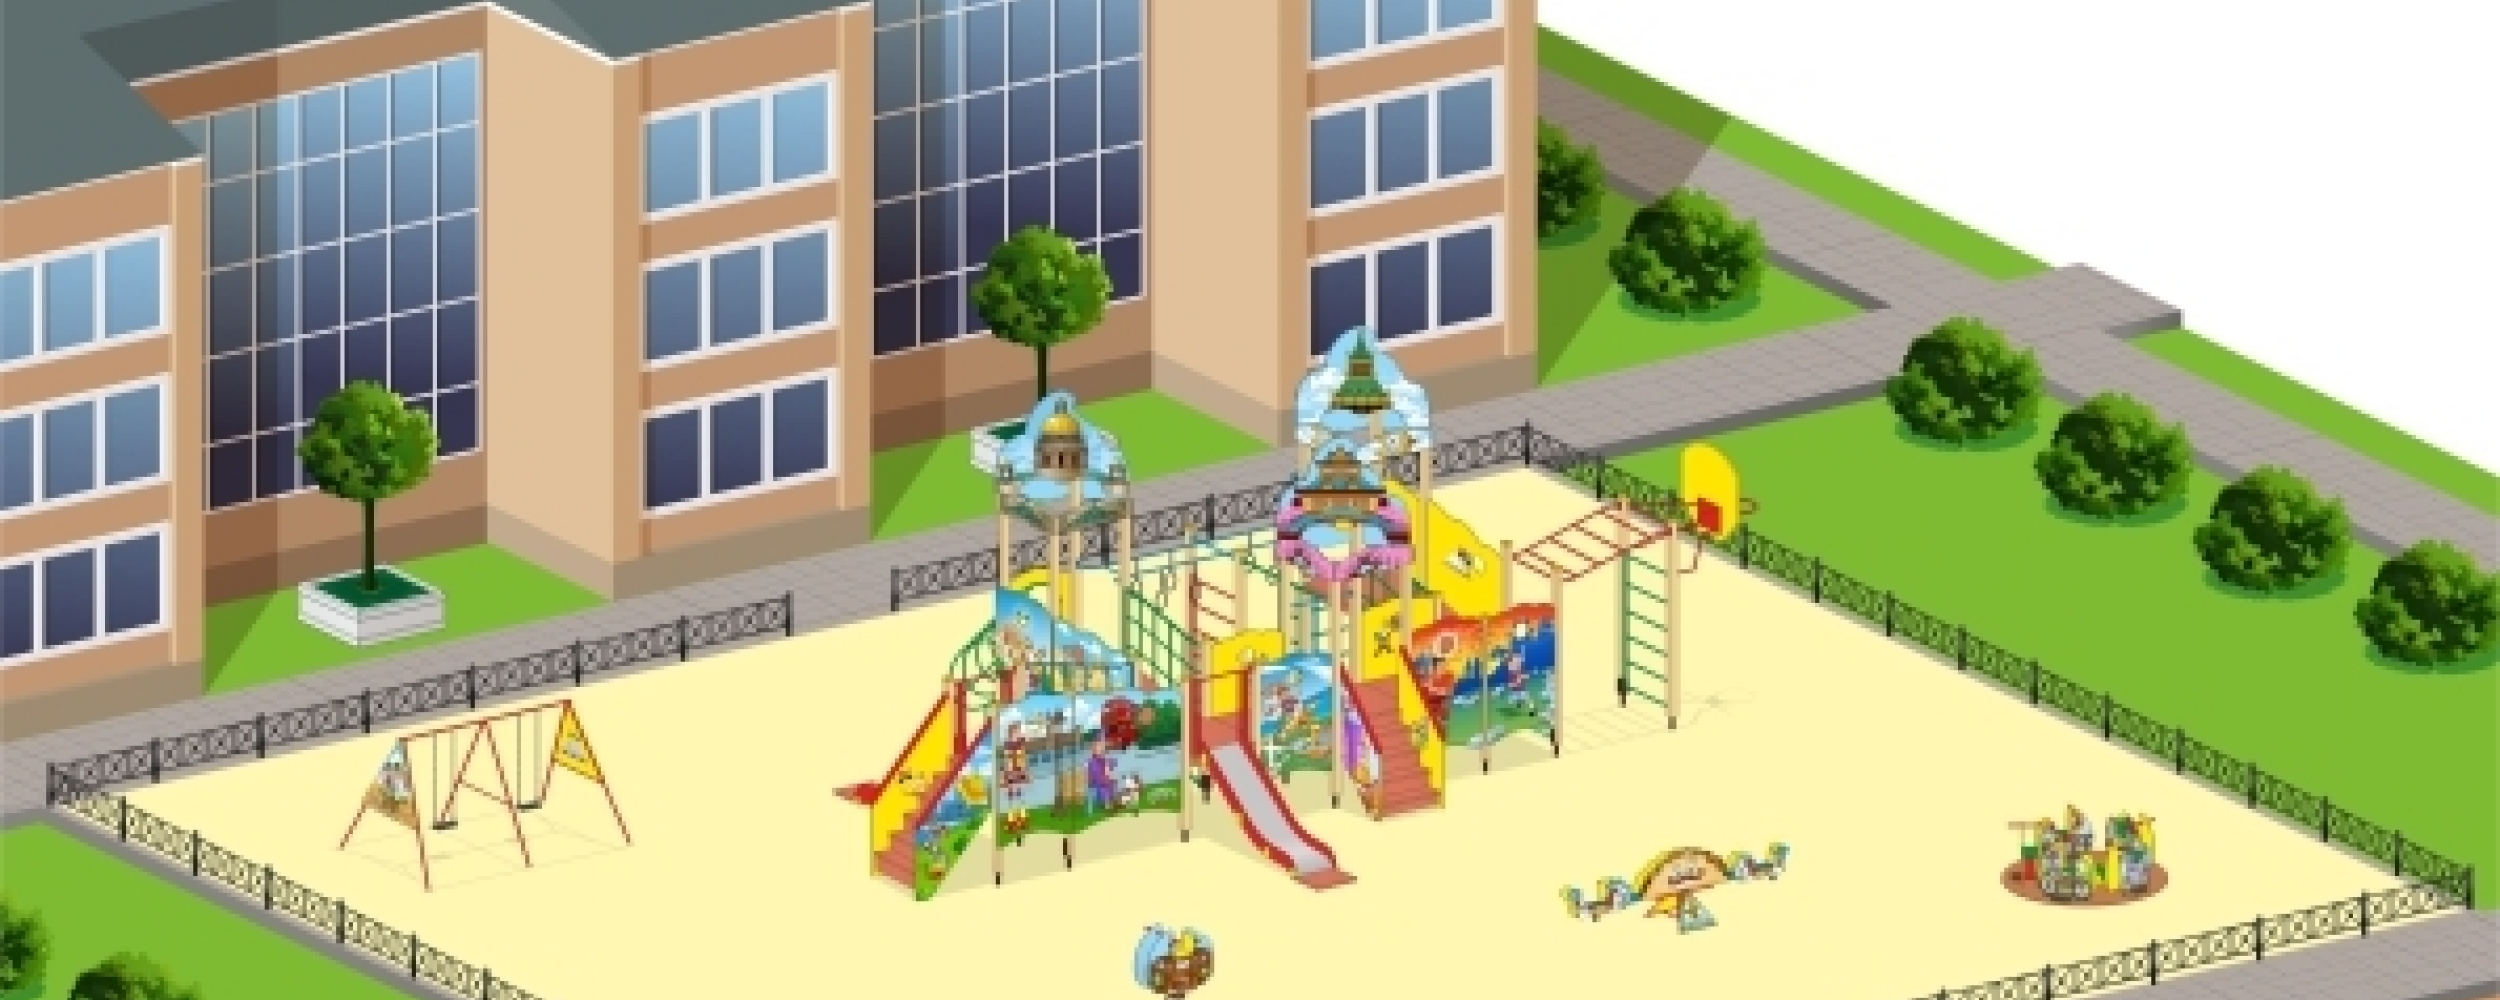 Детские площадки в стиле "Вокруг Света"